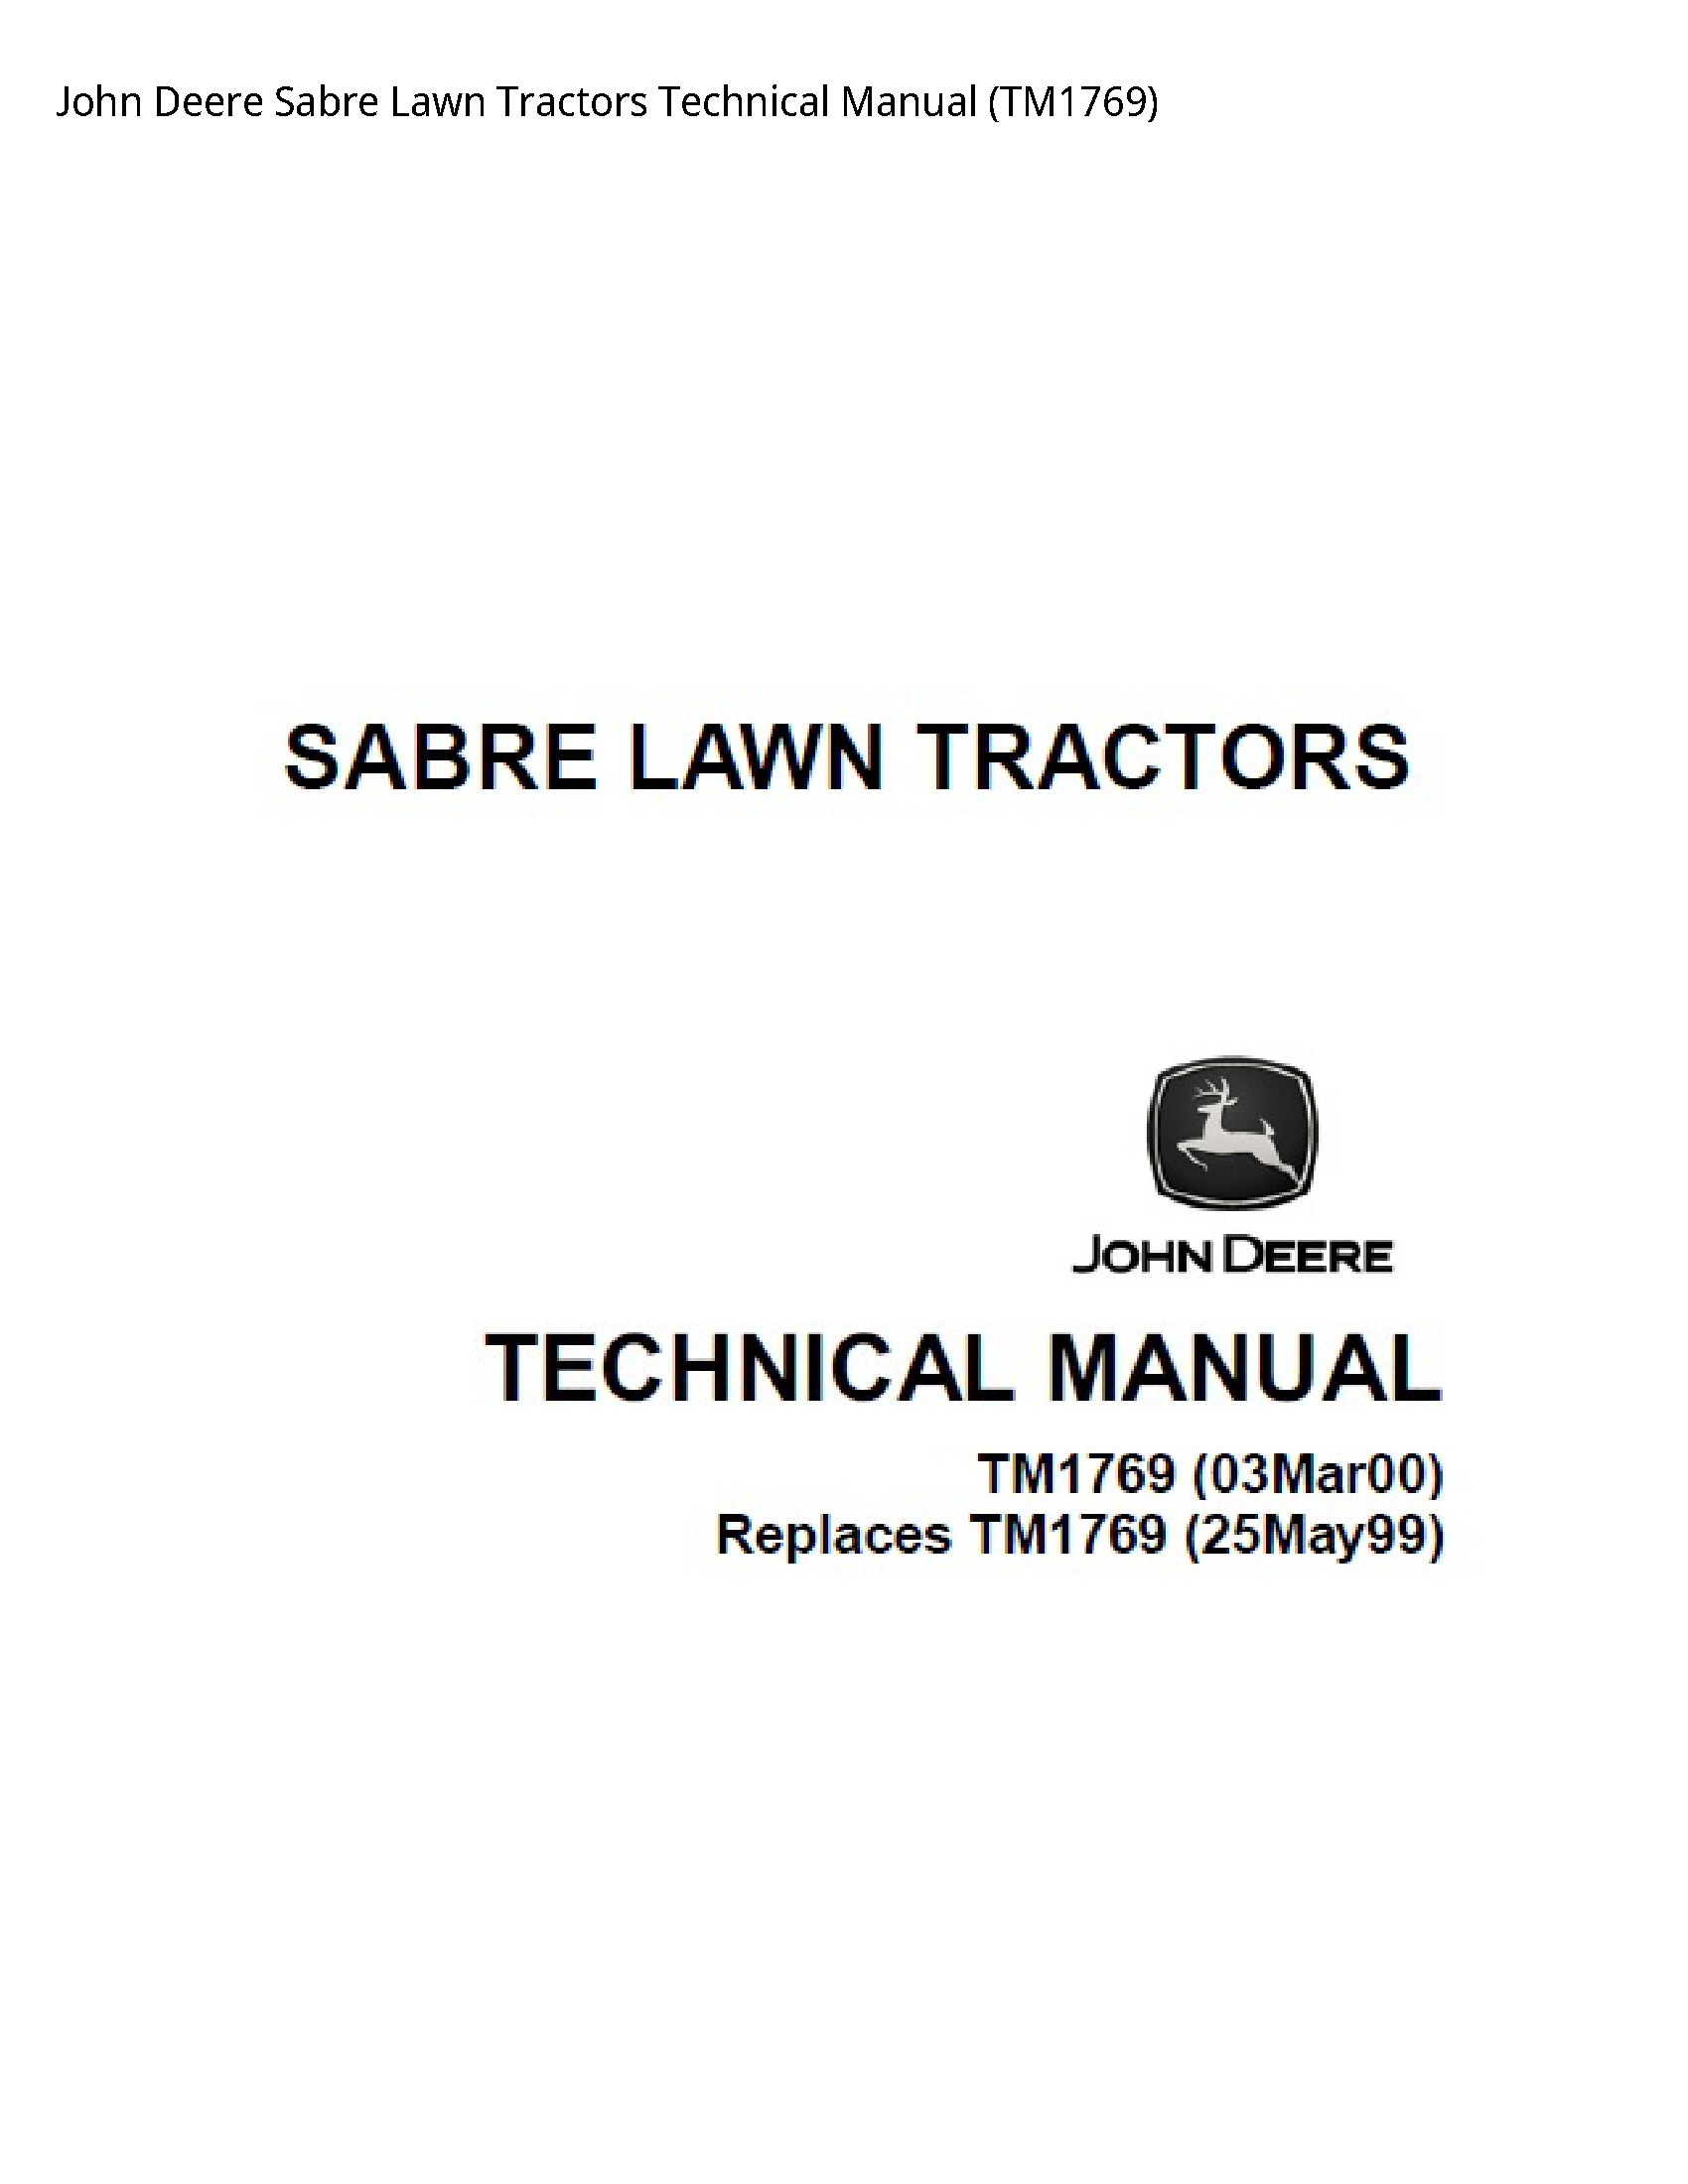 John Deere Sabre Lawn Tractors Technical manual